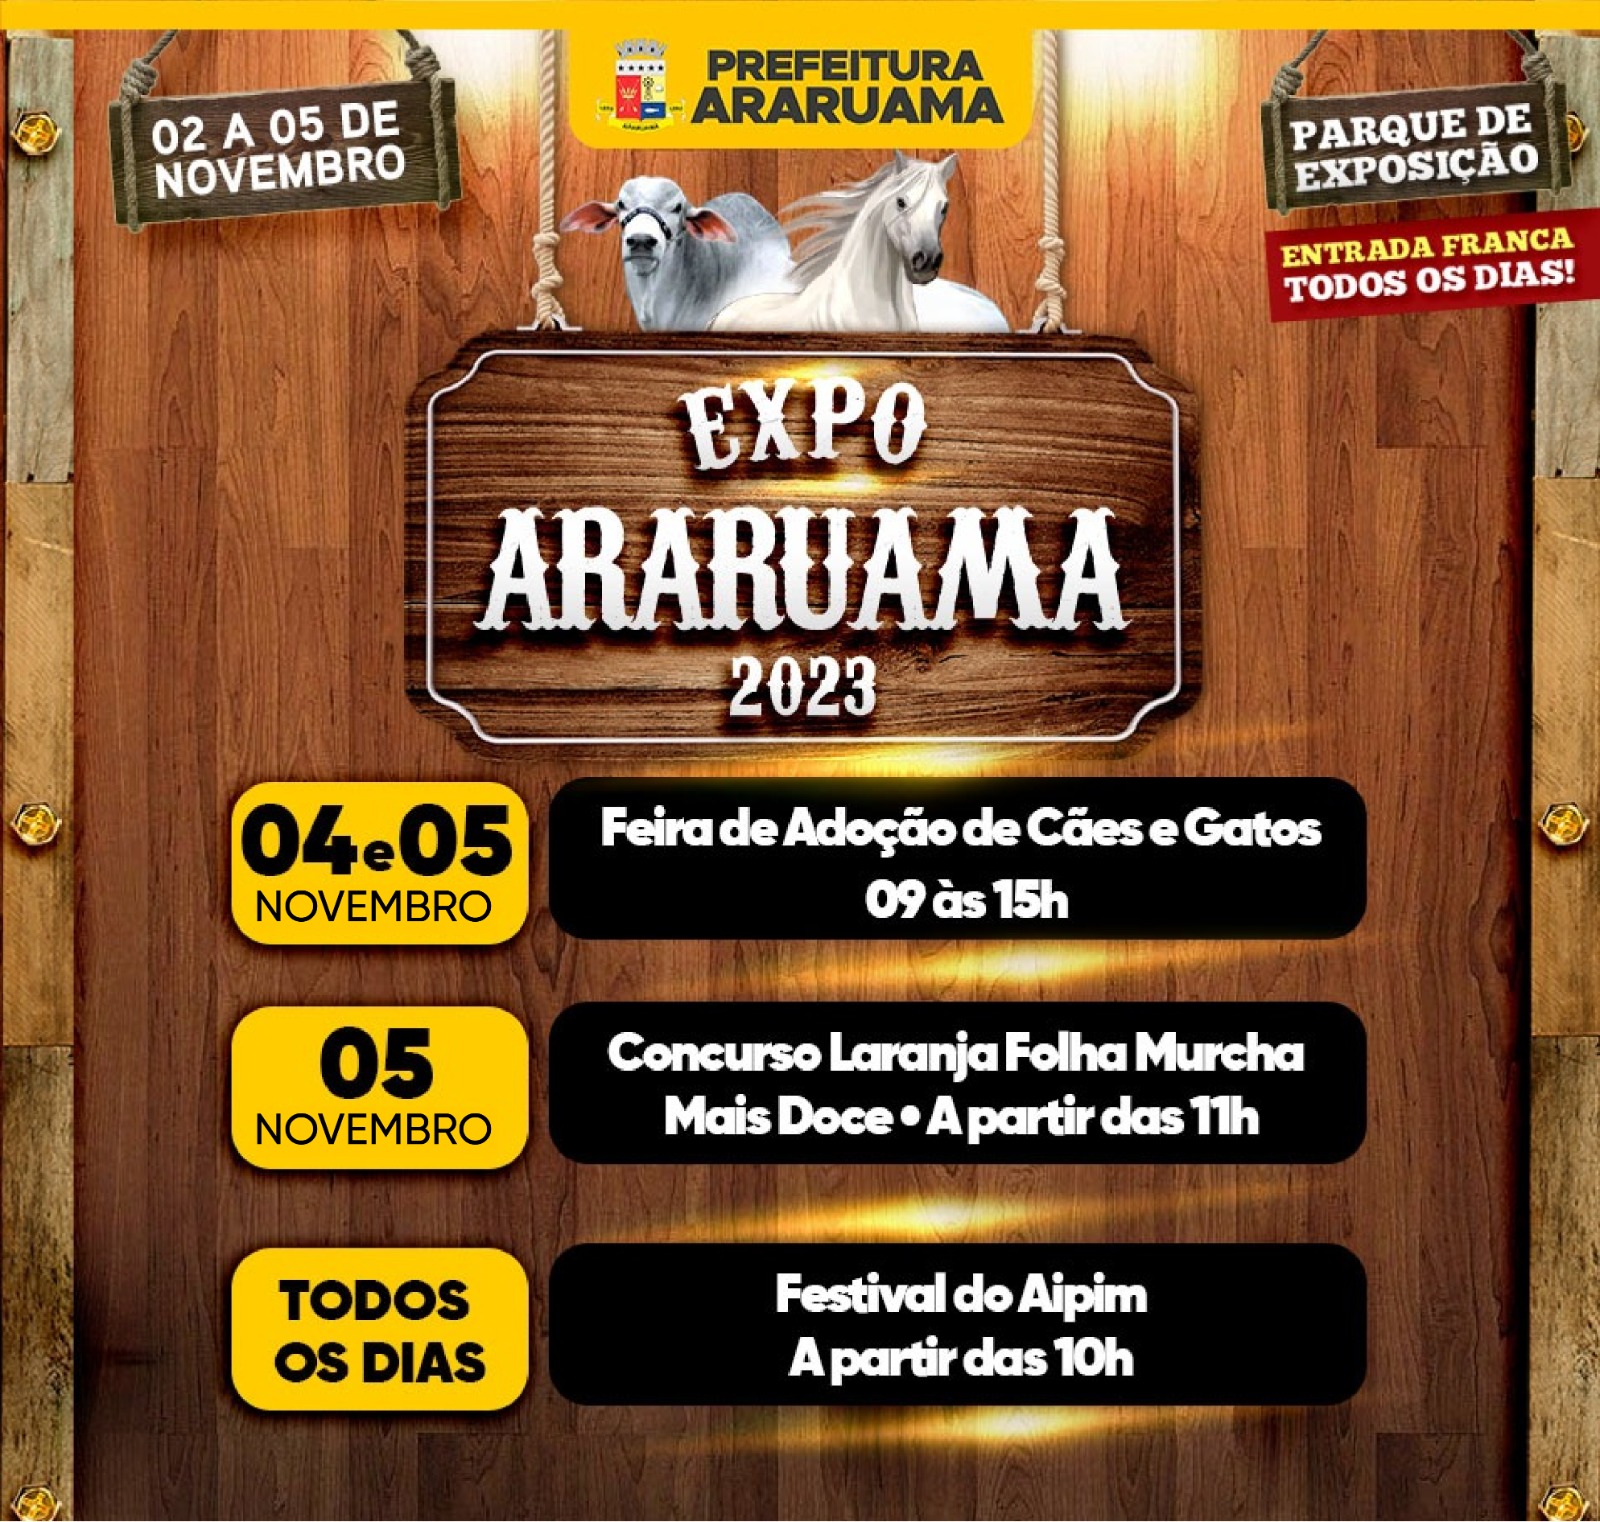 Expo Araruama 2023 tem programação especial para fomentar a economia e a agricultura